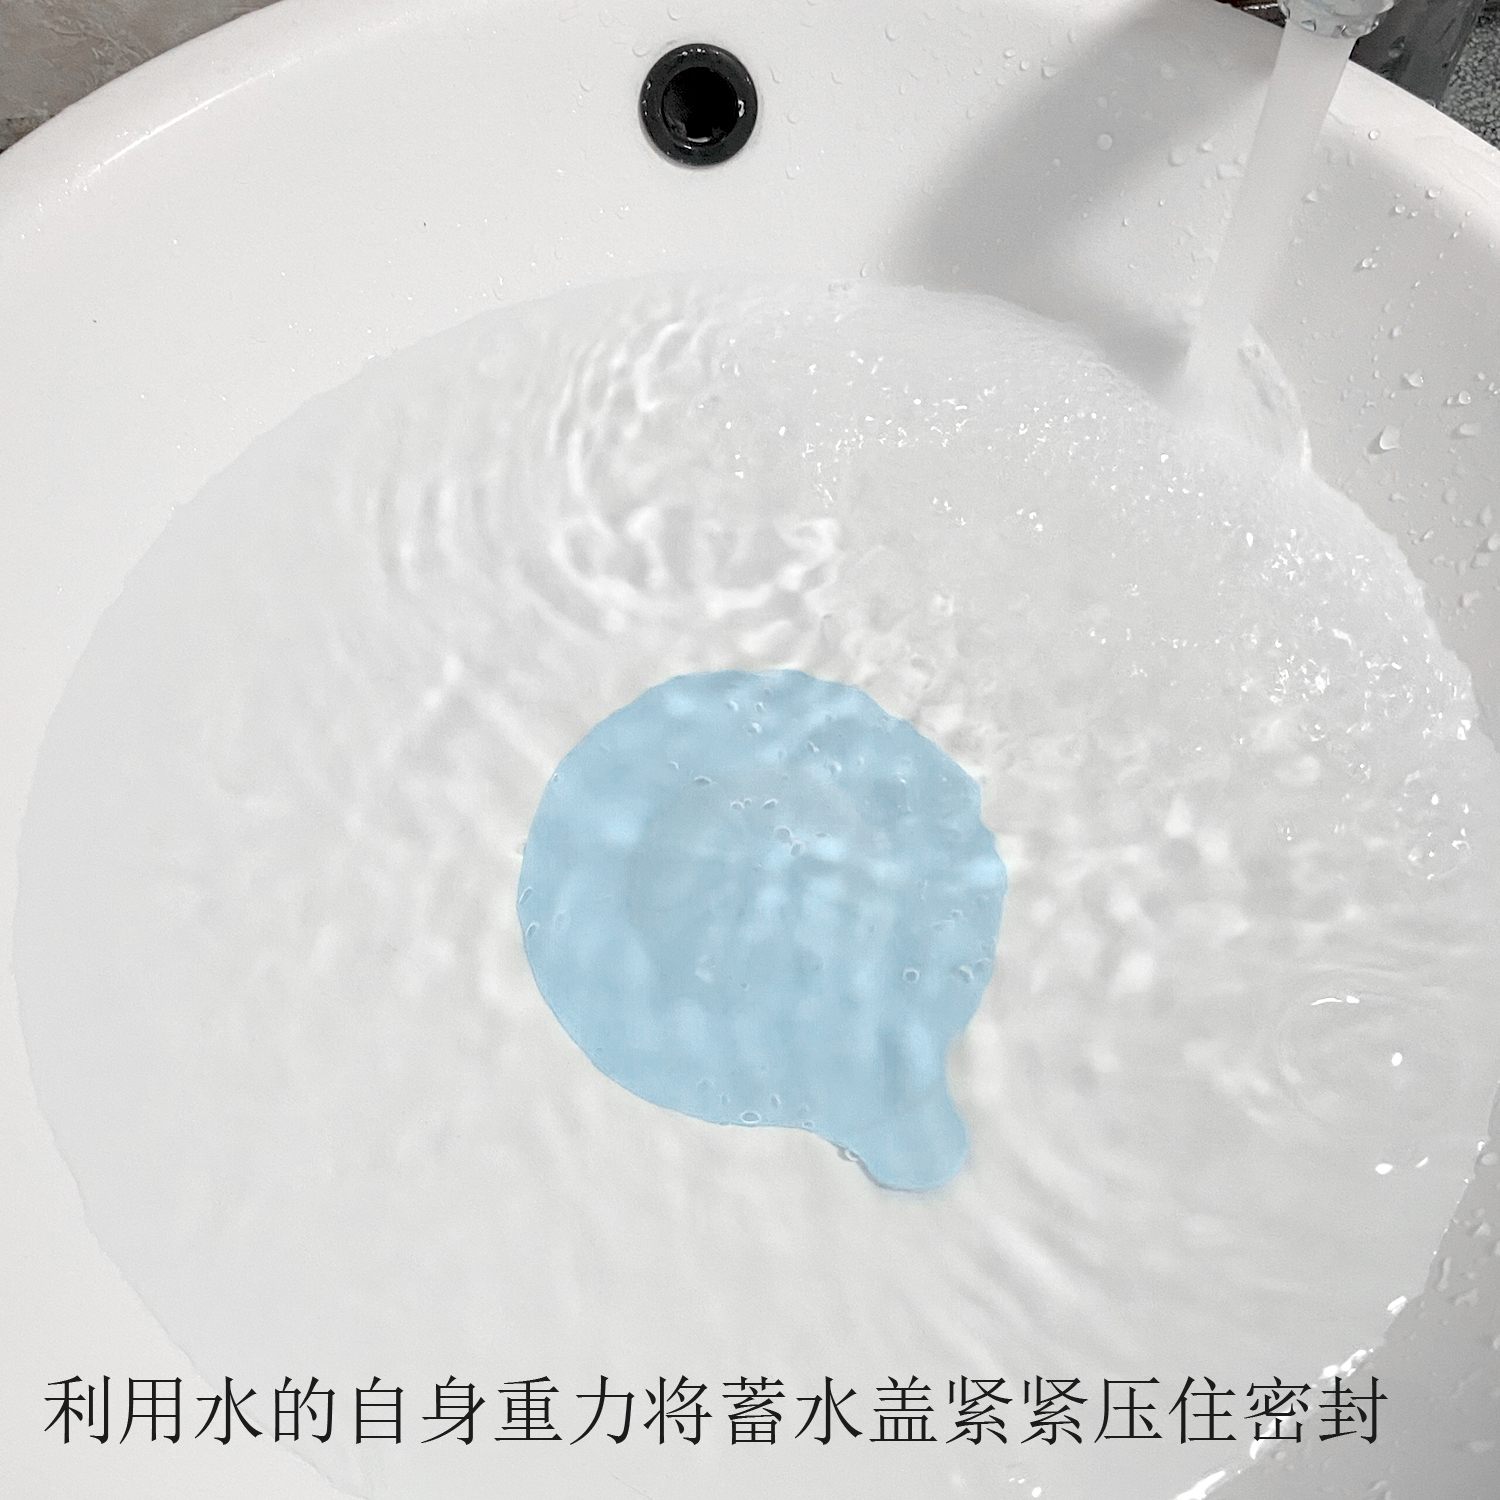 Uxoz浴室毛发过滤器卫生间洗面盆浴缸头发过滤网防堵器